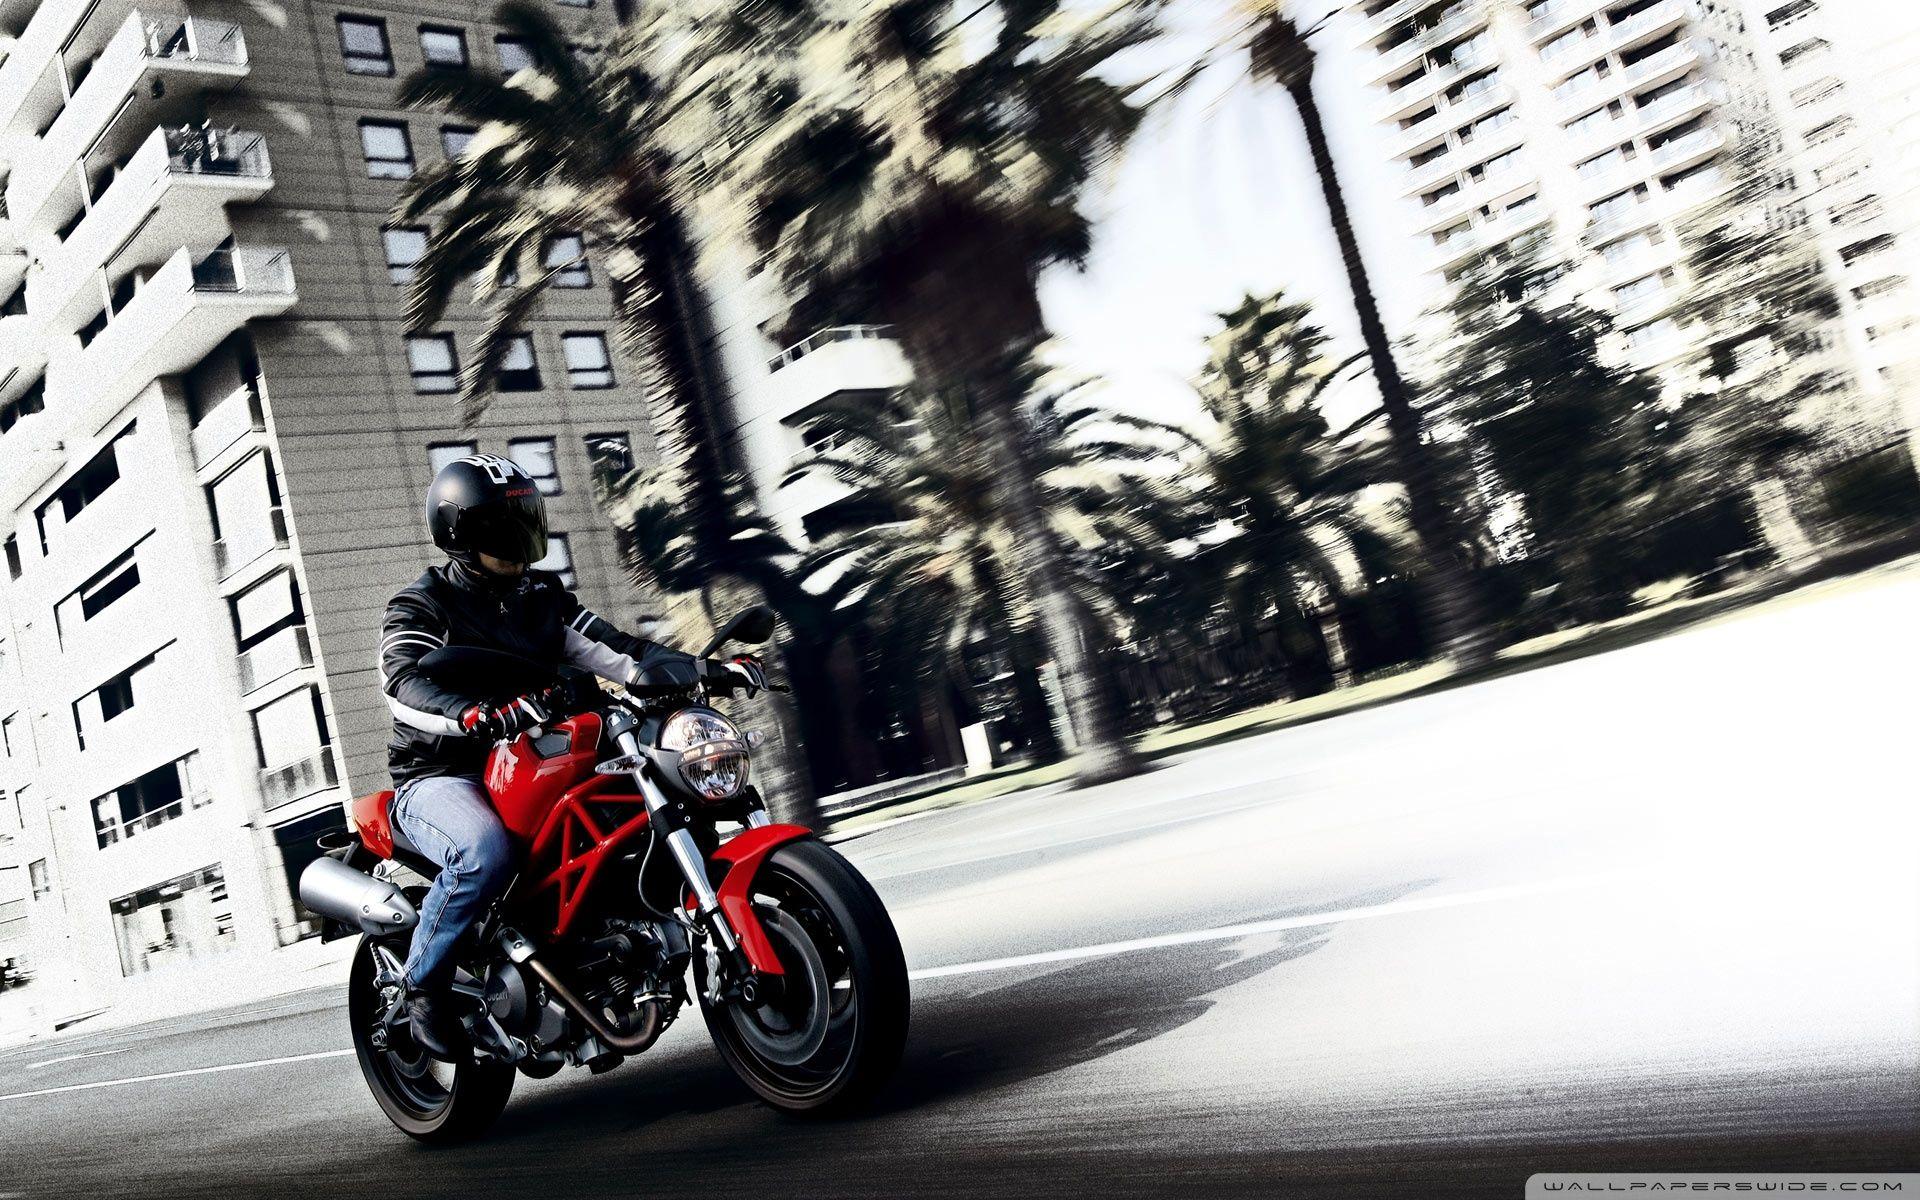 Ducati Monster 696 1 HD desktop wallpaper, Widescreen, High